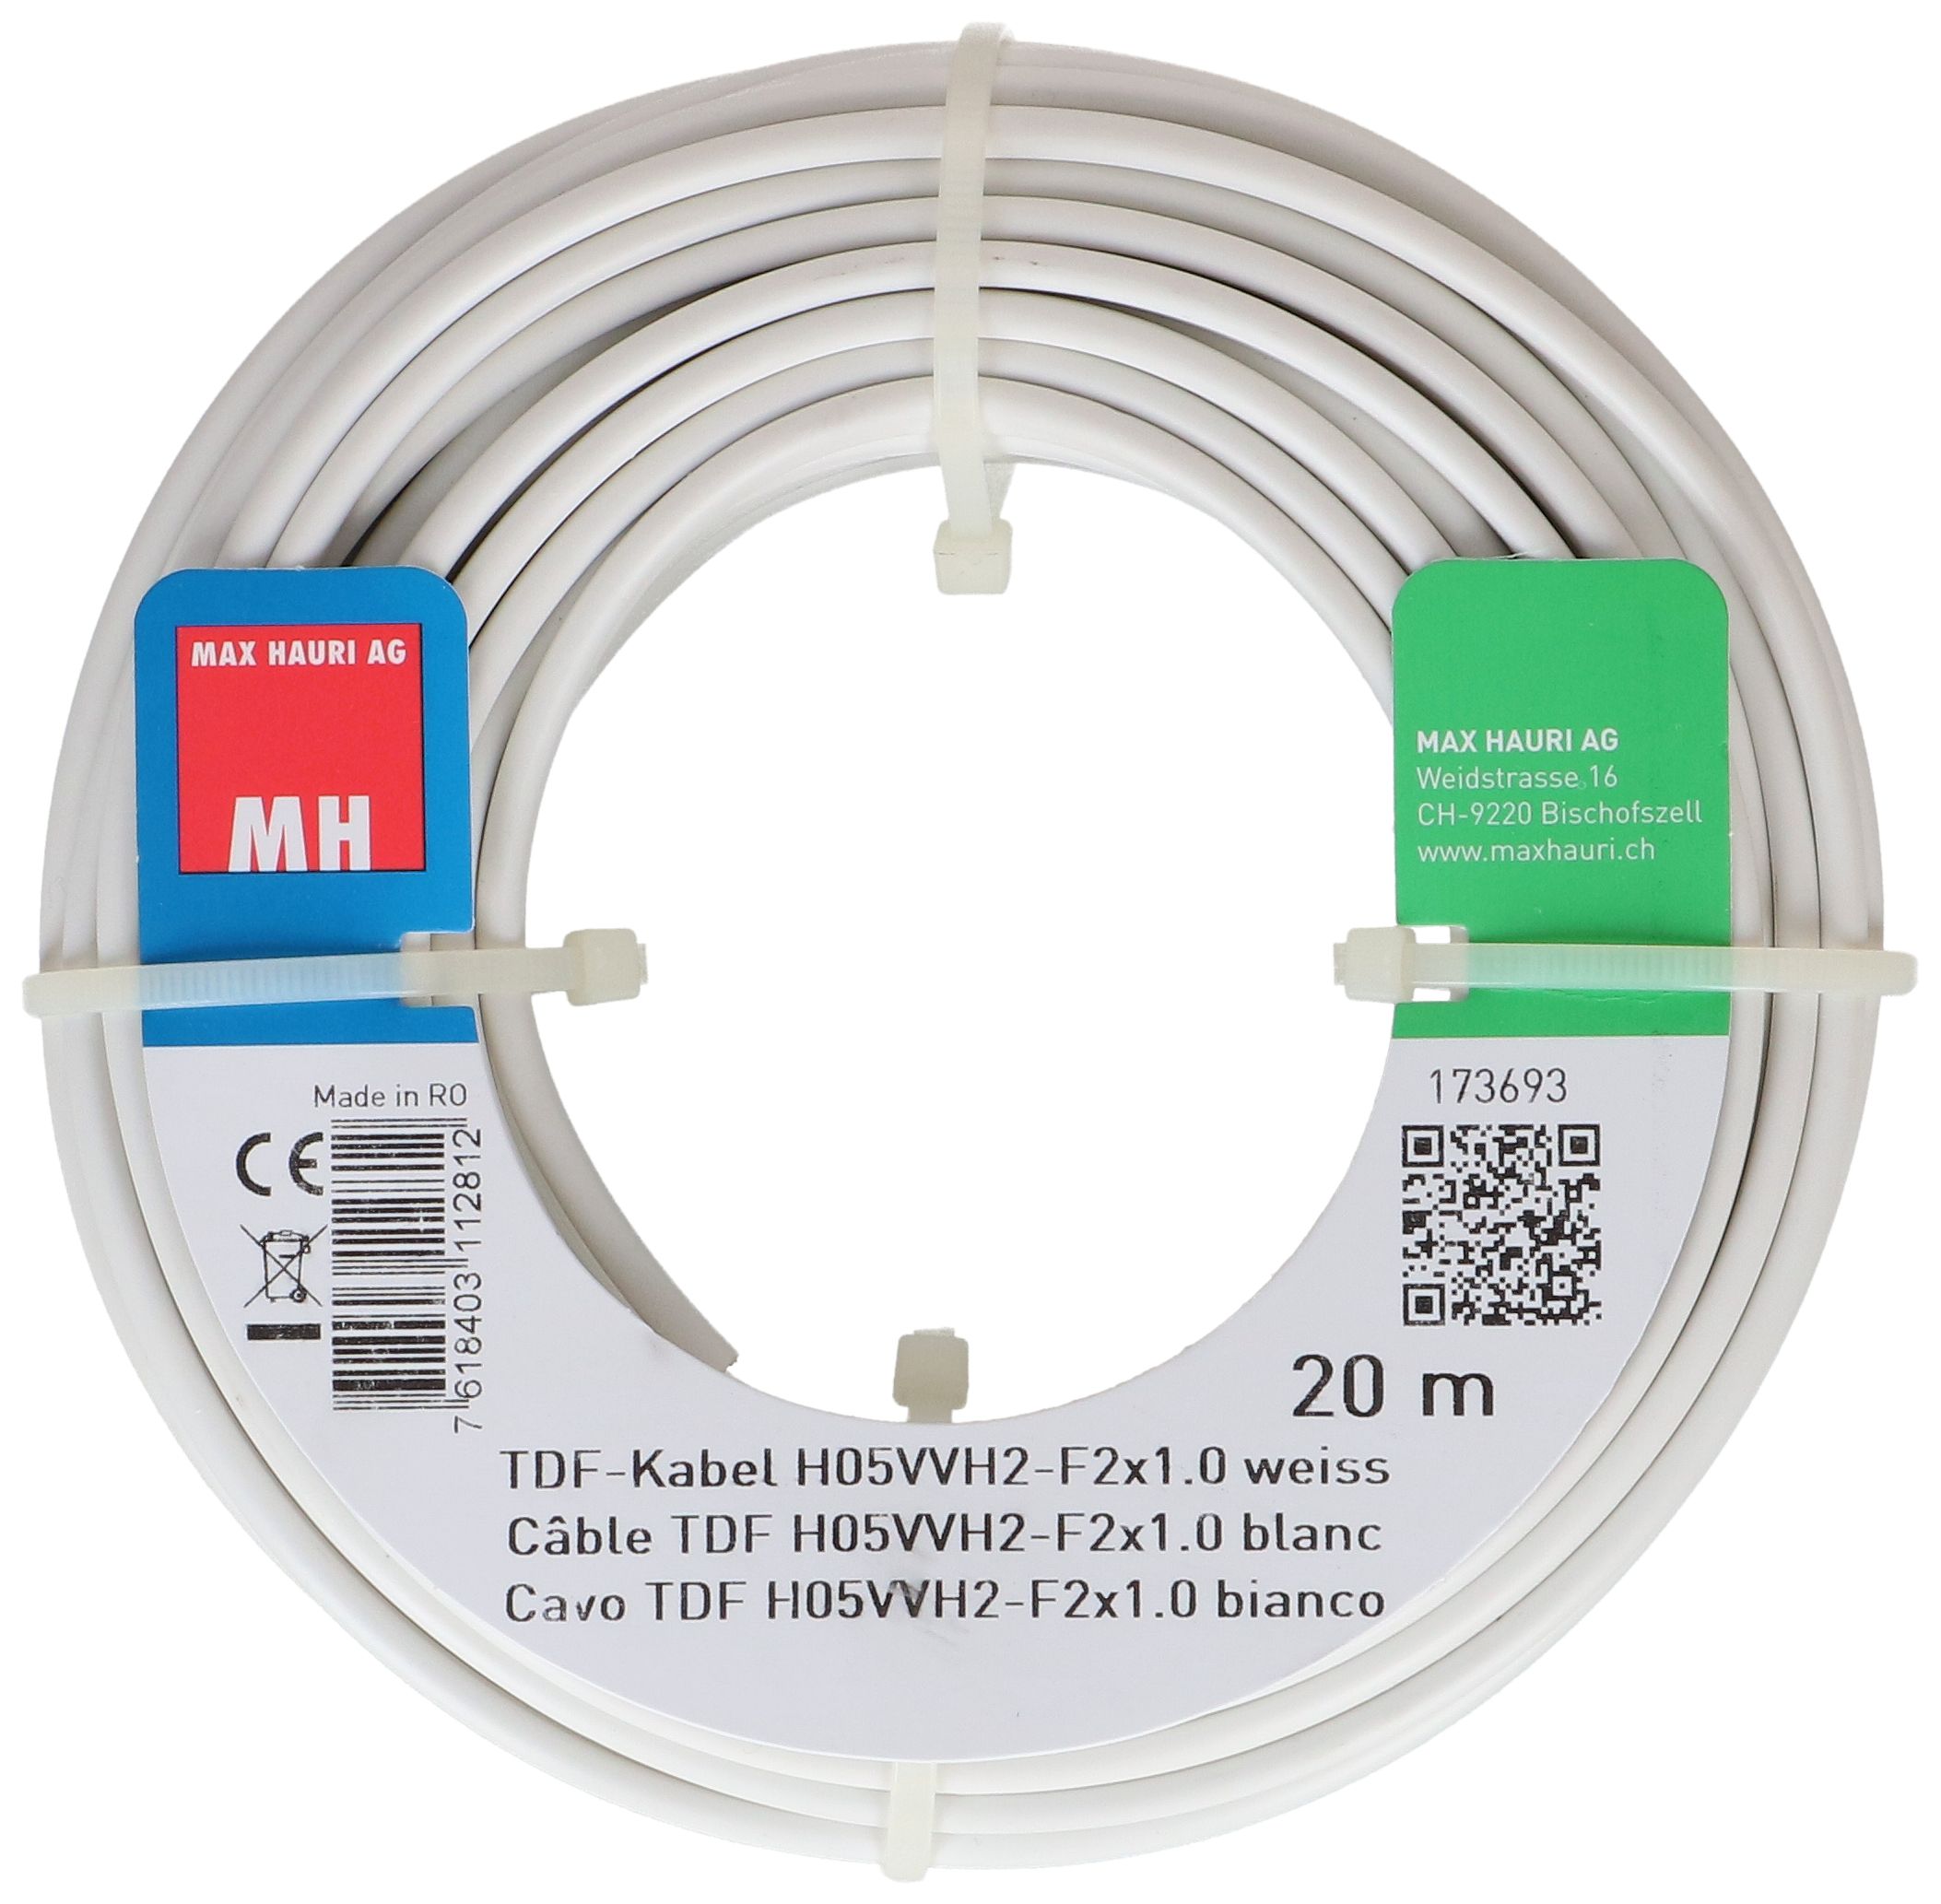 TDF-Kabel H05VVH2-F2X1.0 20m weiss